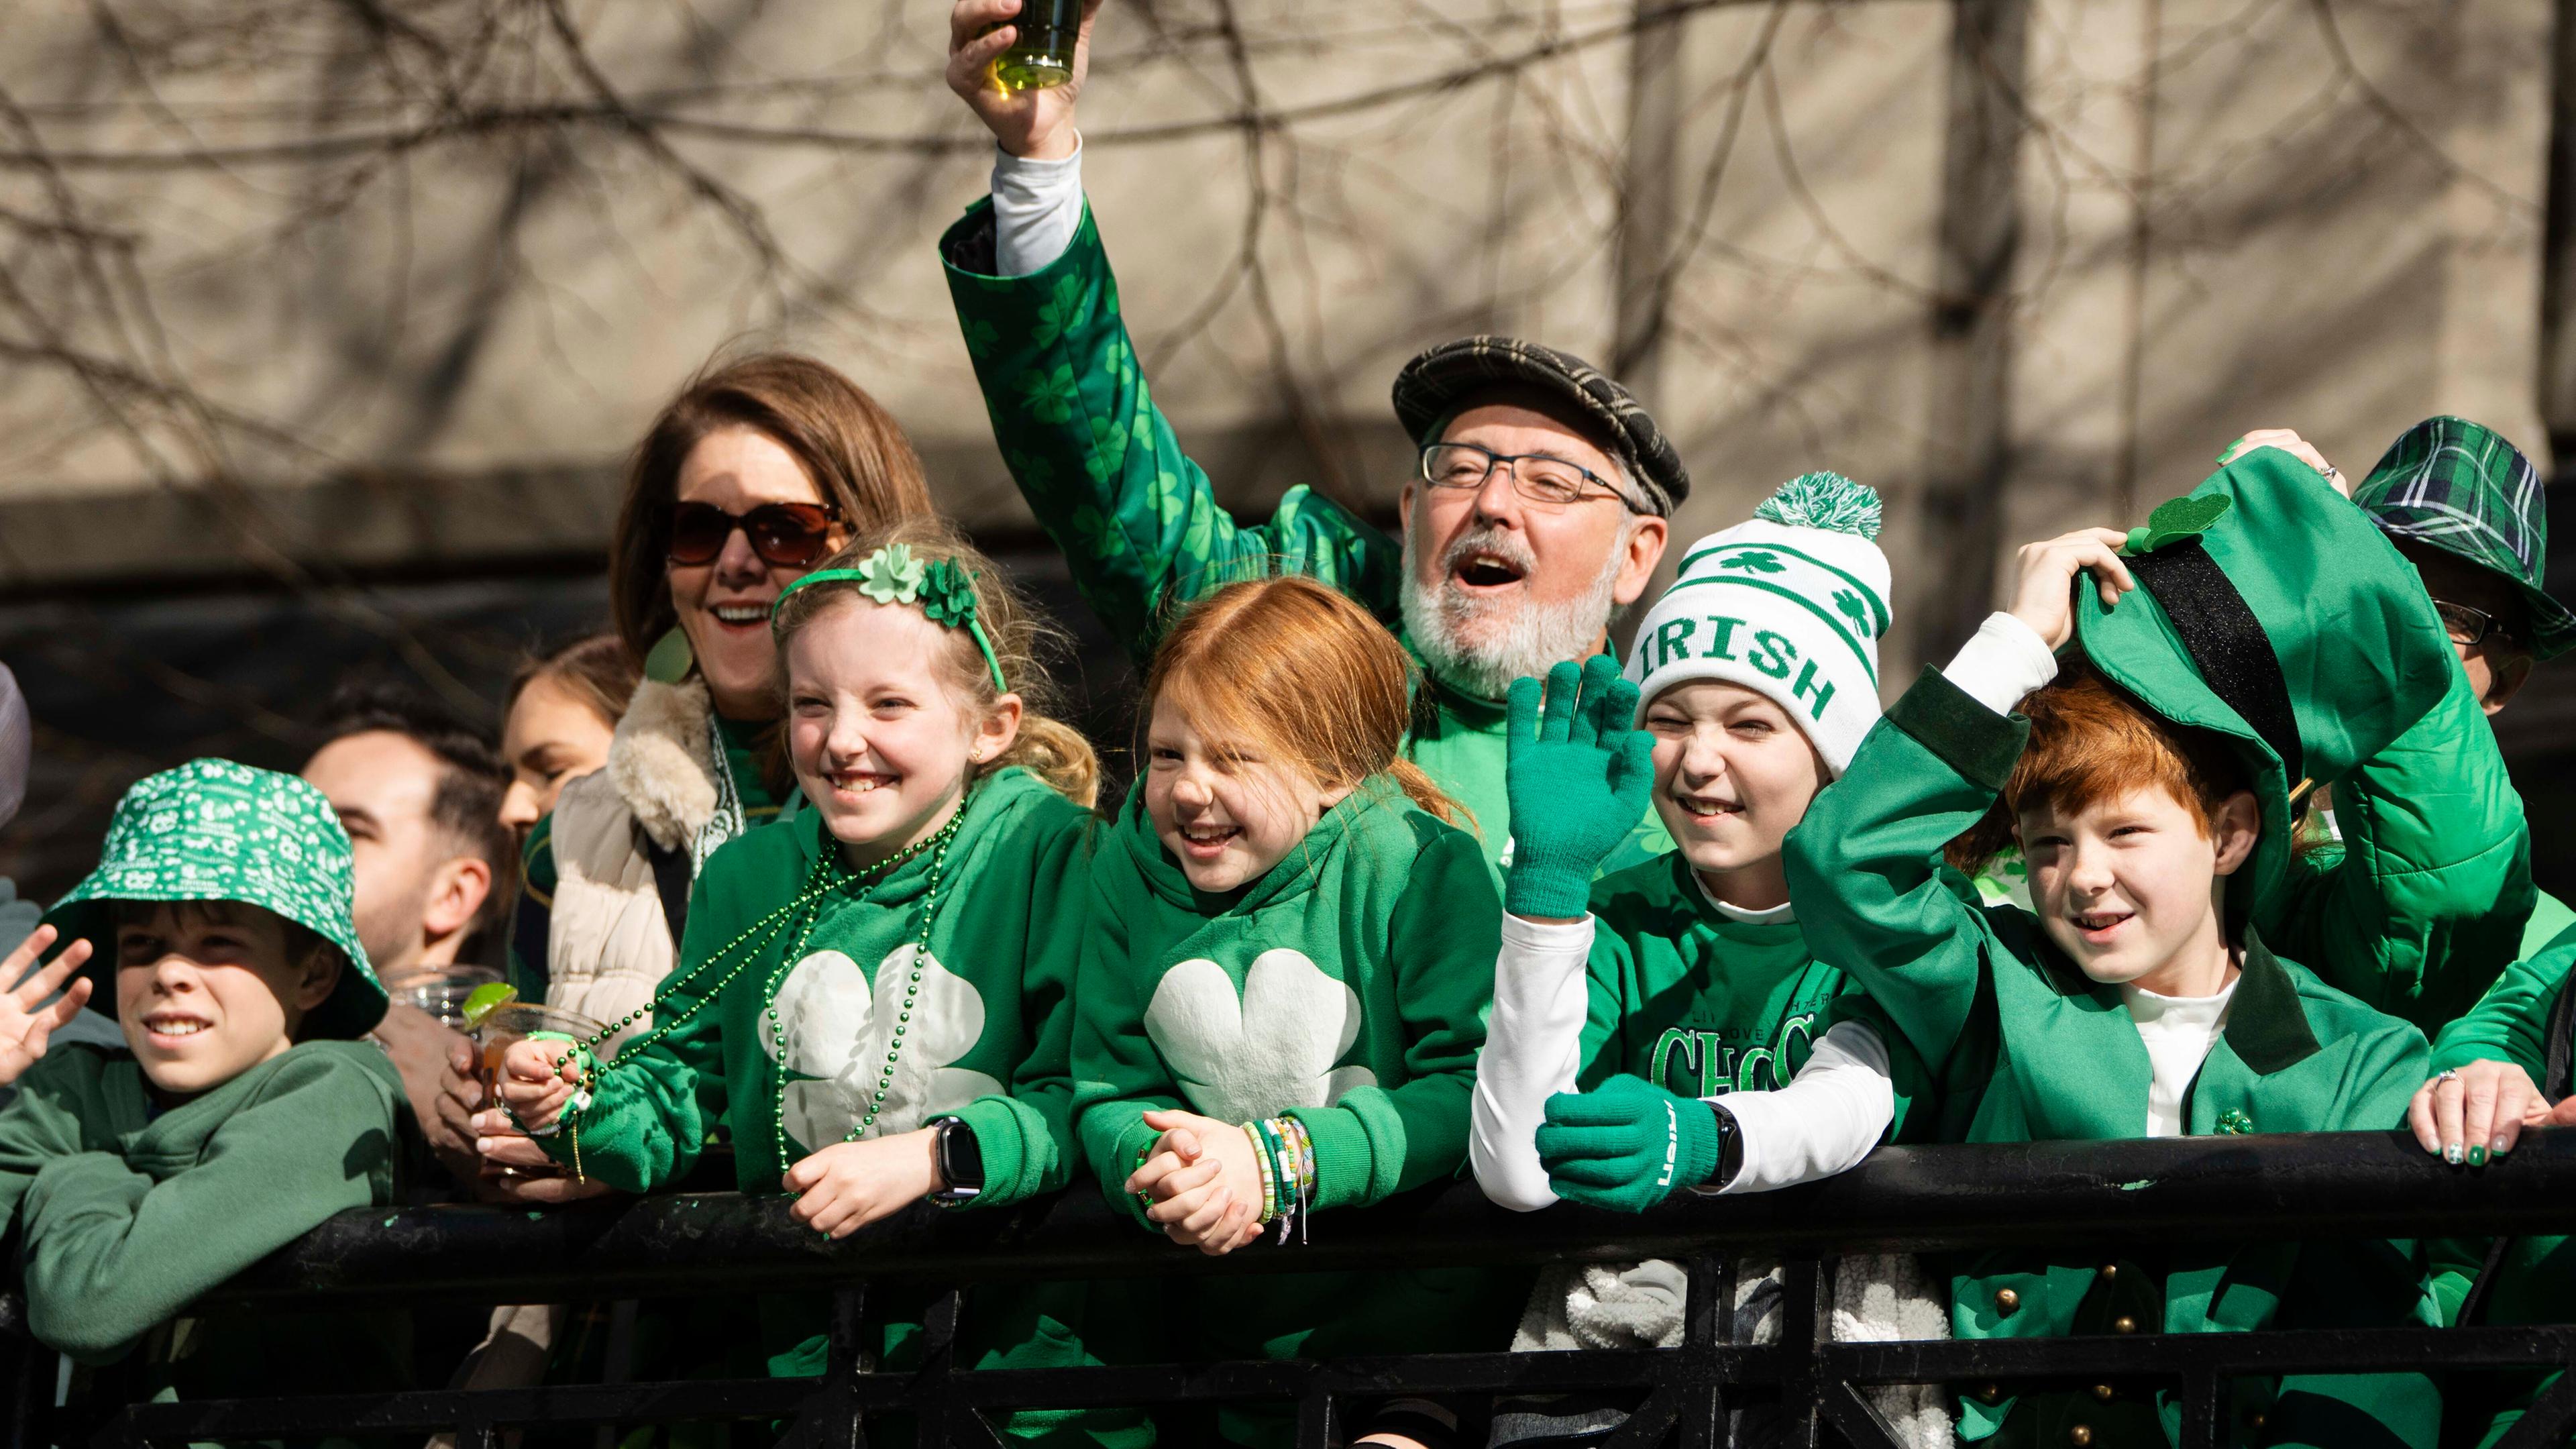 Feiernde Menschen in grüner Kleidung zur St. Patrick's Day Parade in Chicago.